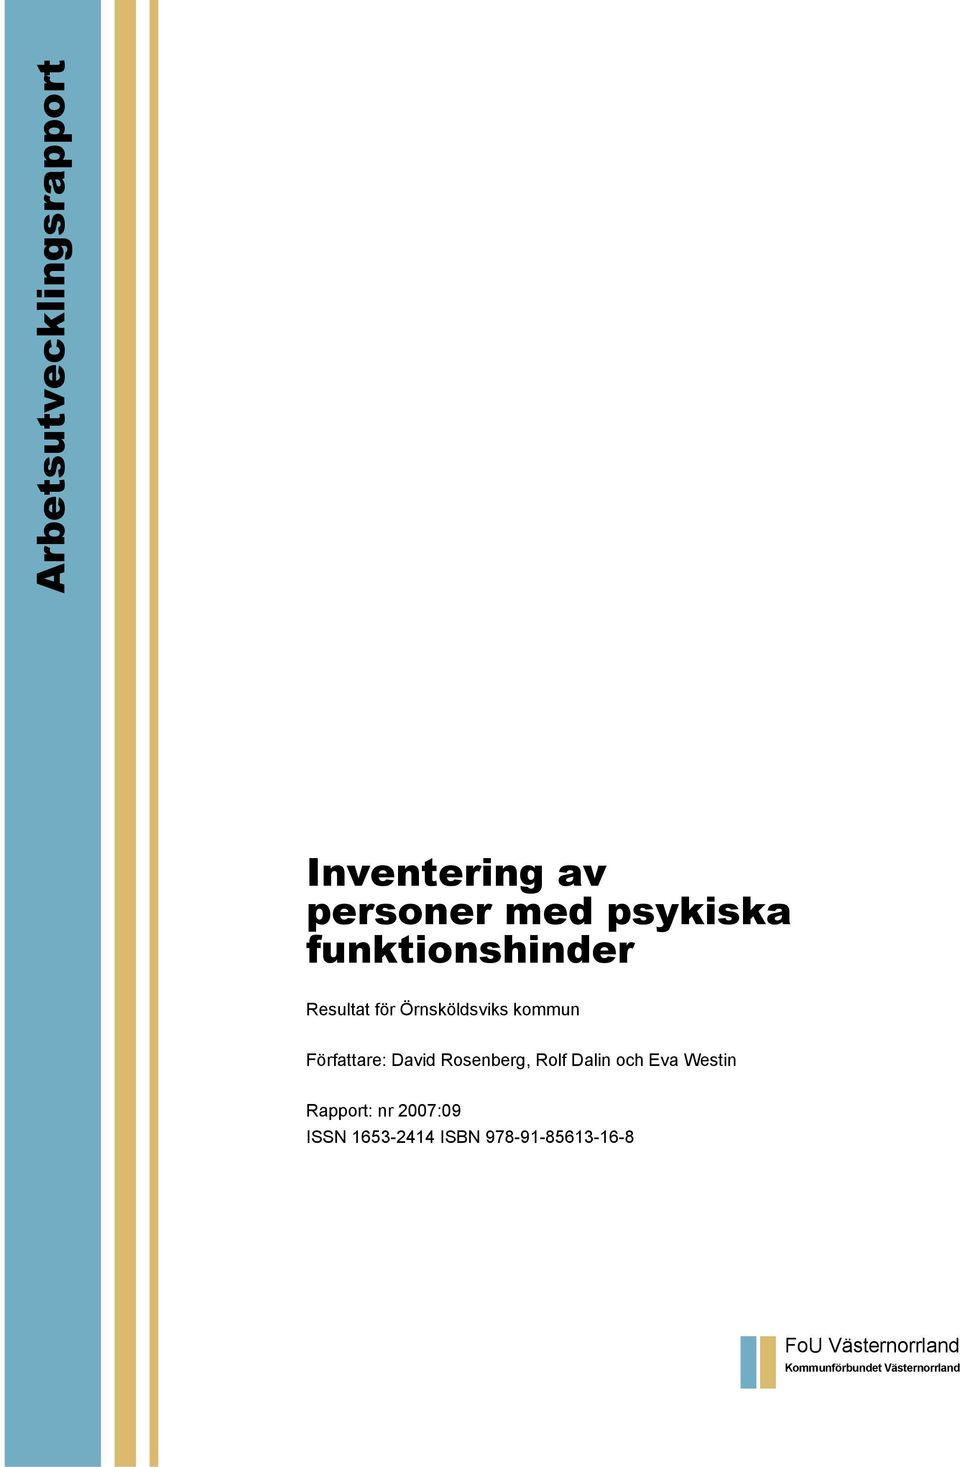 Rosenberg, Rolf Dalin och Eva Westin Rapport: nr 2007:09 ISSN